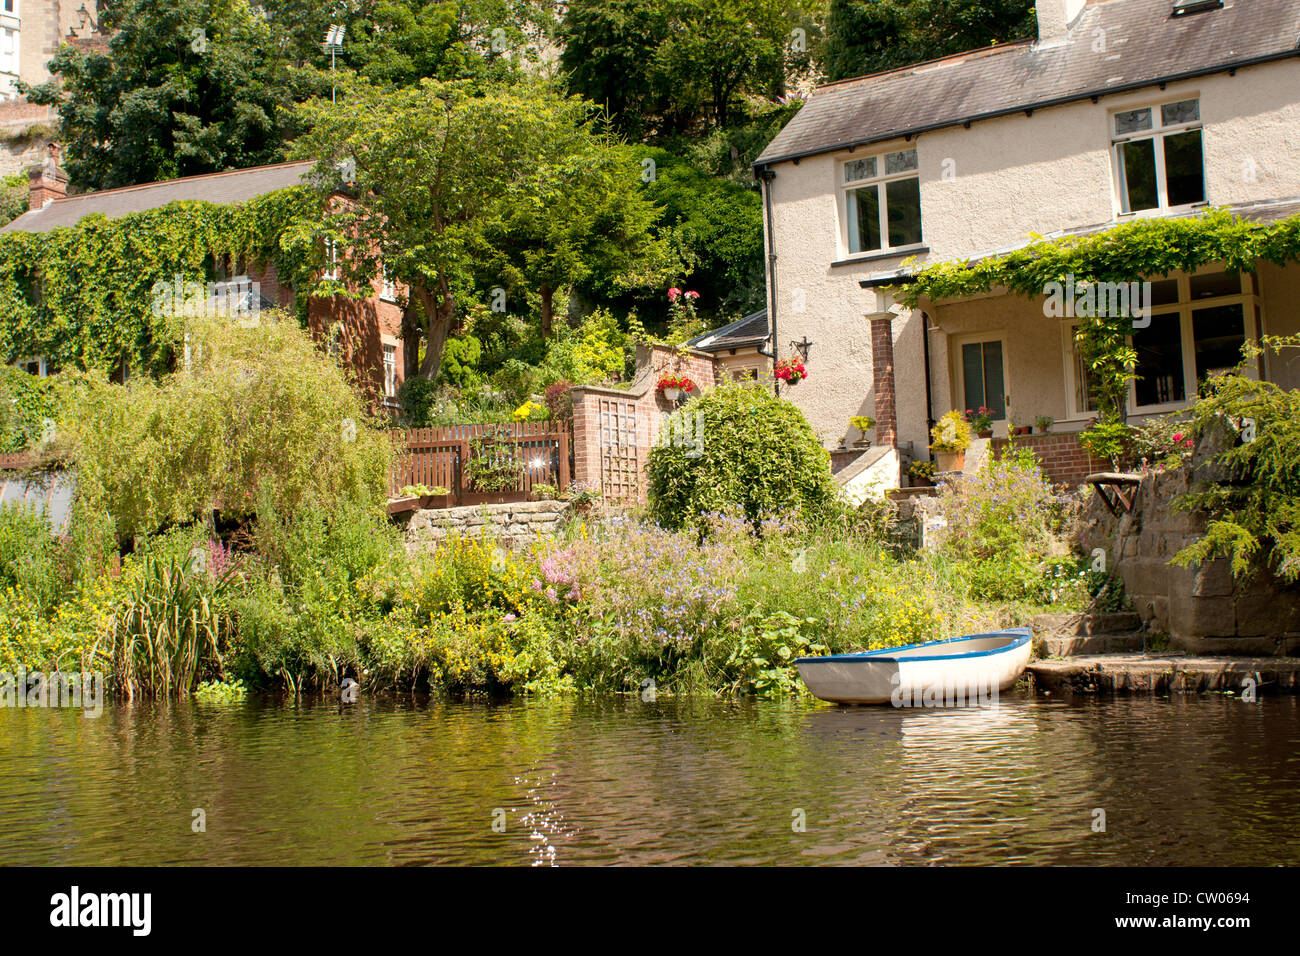 Blick auf Haus und Garten, Ruderboot auf dem Fluß Nidd, entnommen ist das ultimative Altersheim? Stockfoto